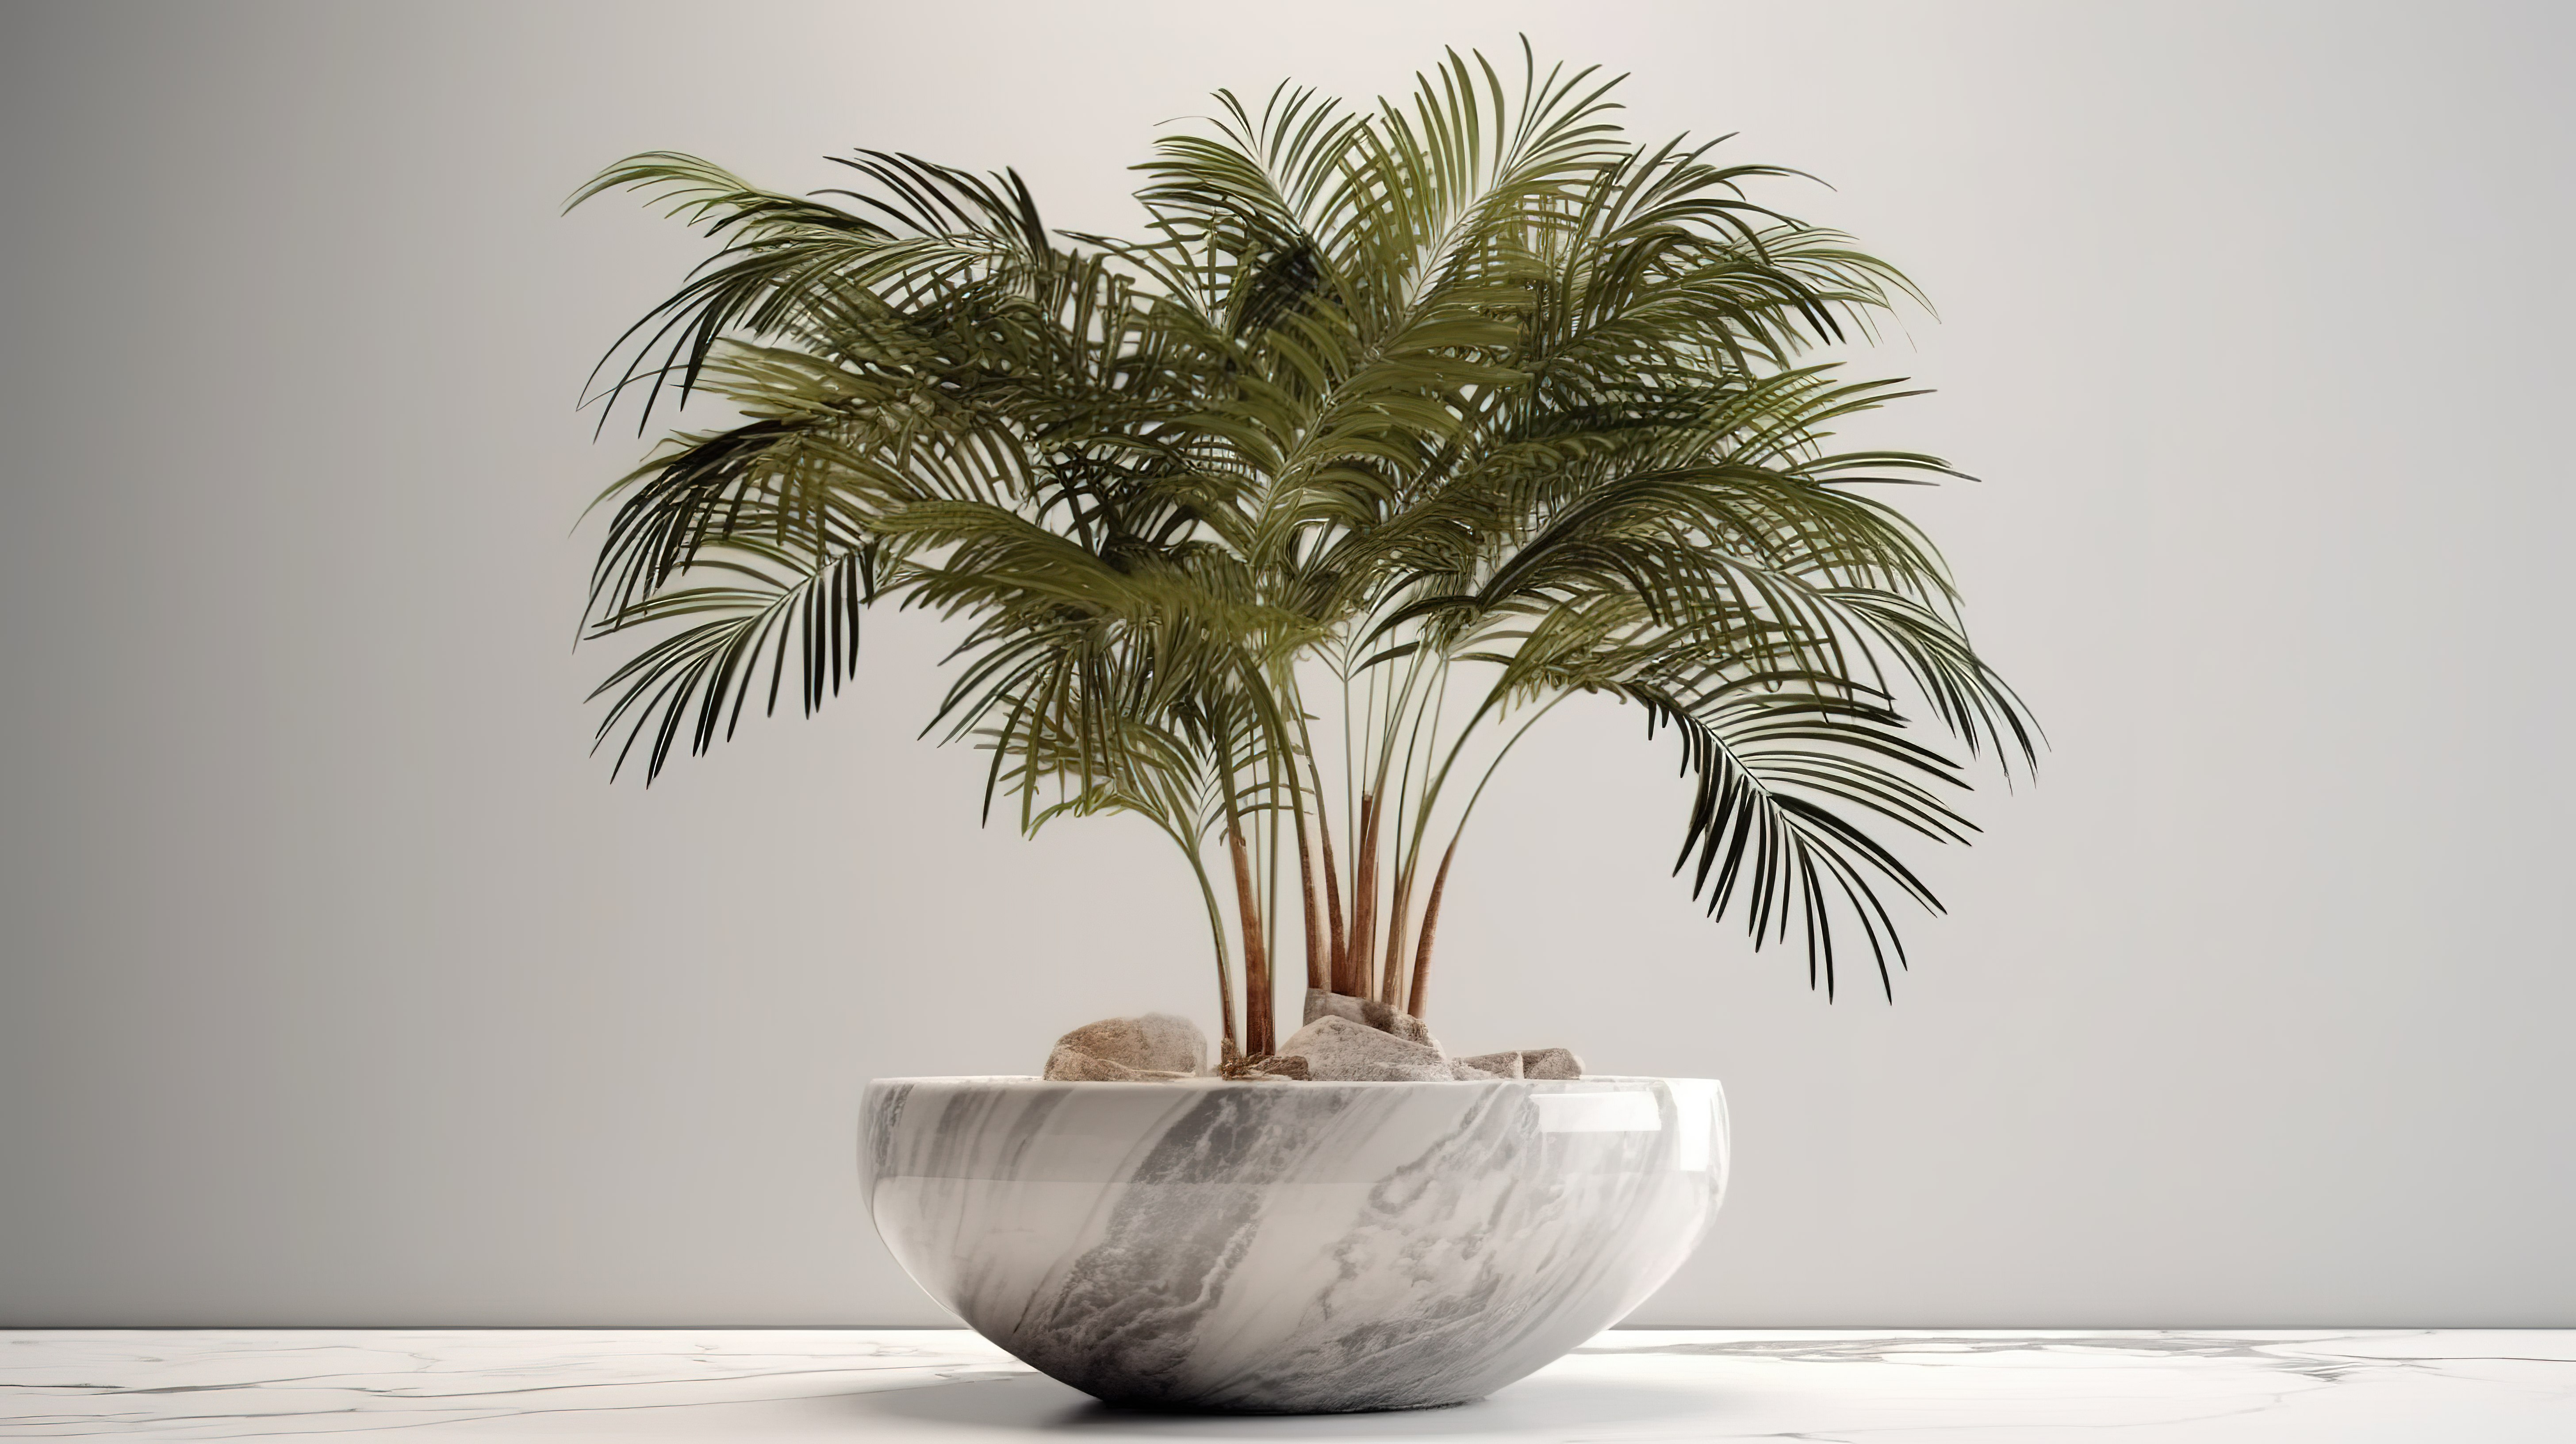 大理石花盆展示了带有层叠叶子的 3D 棕榈树图片